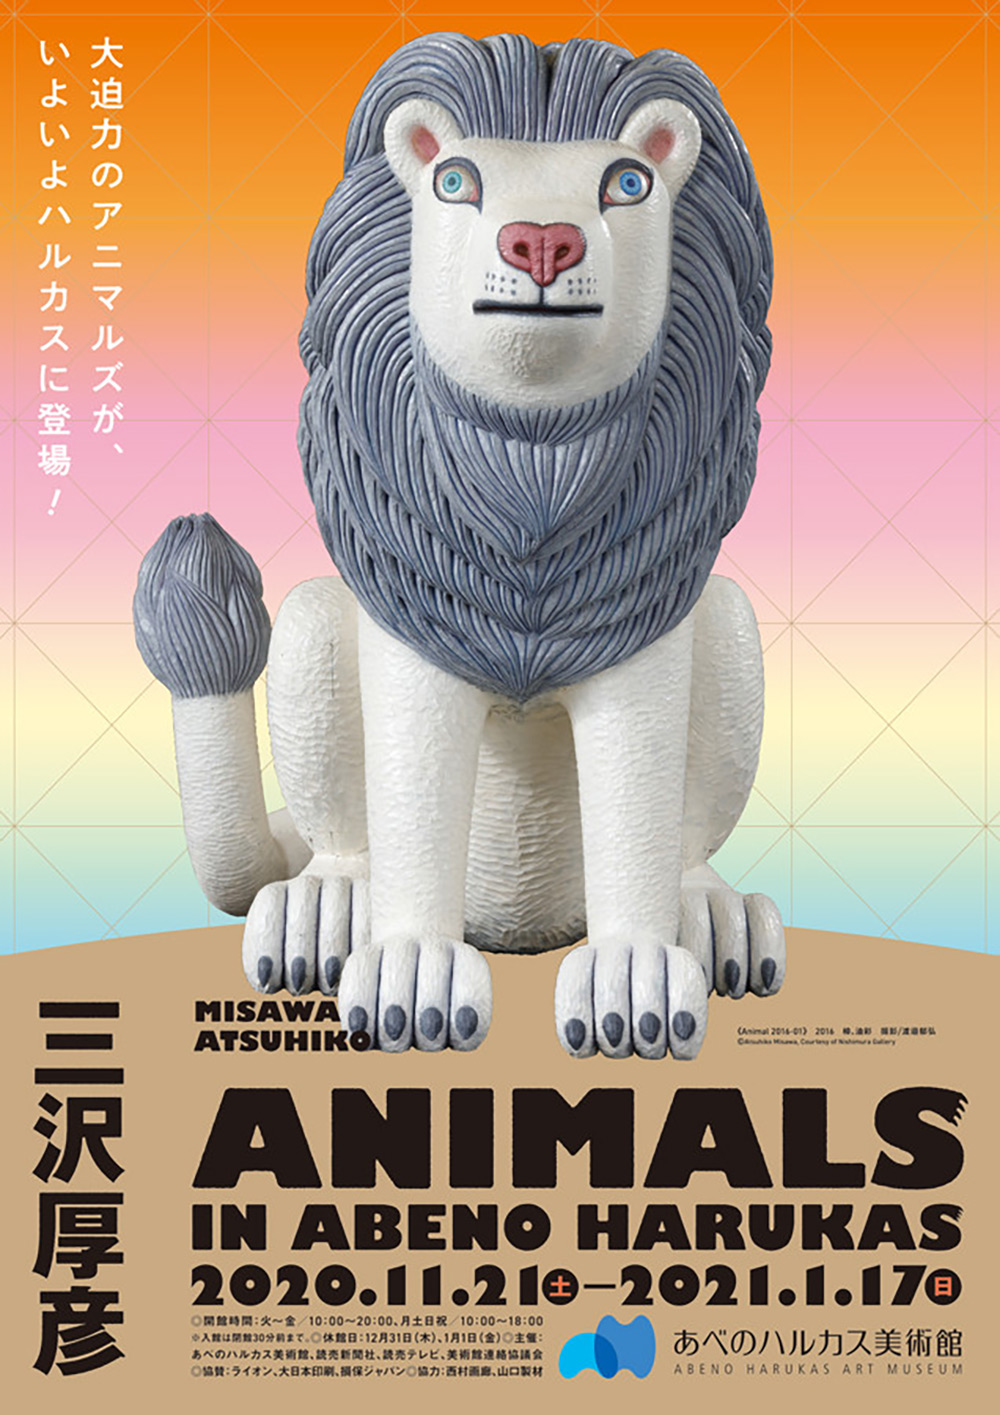 一起去看展！12组日本展览海报设计